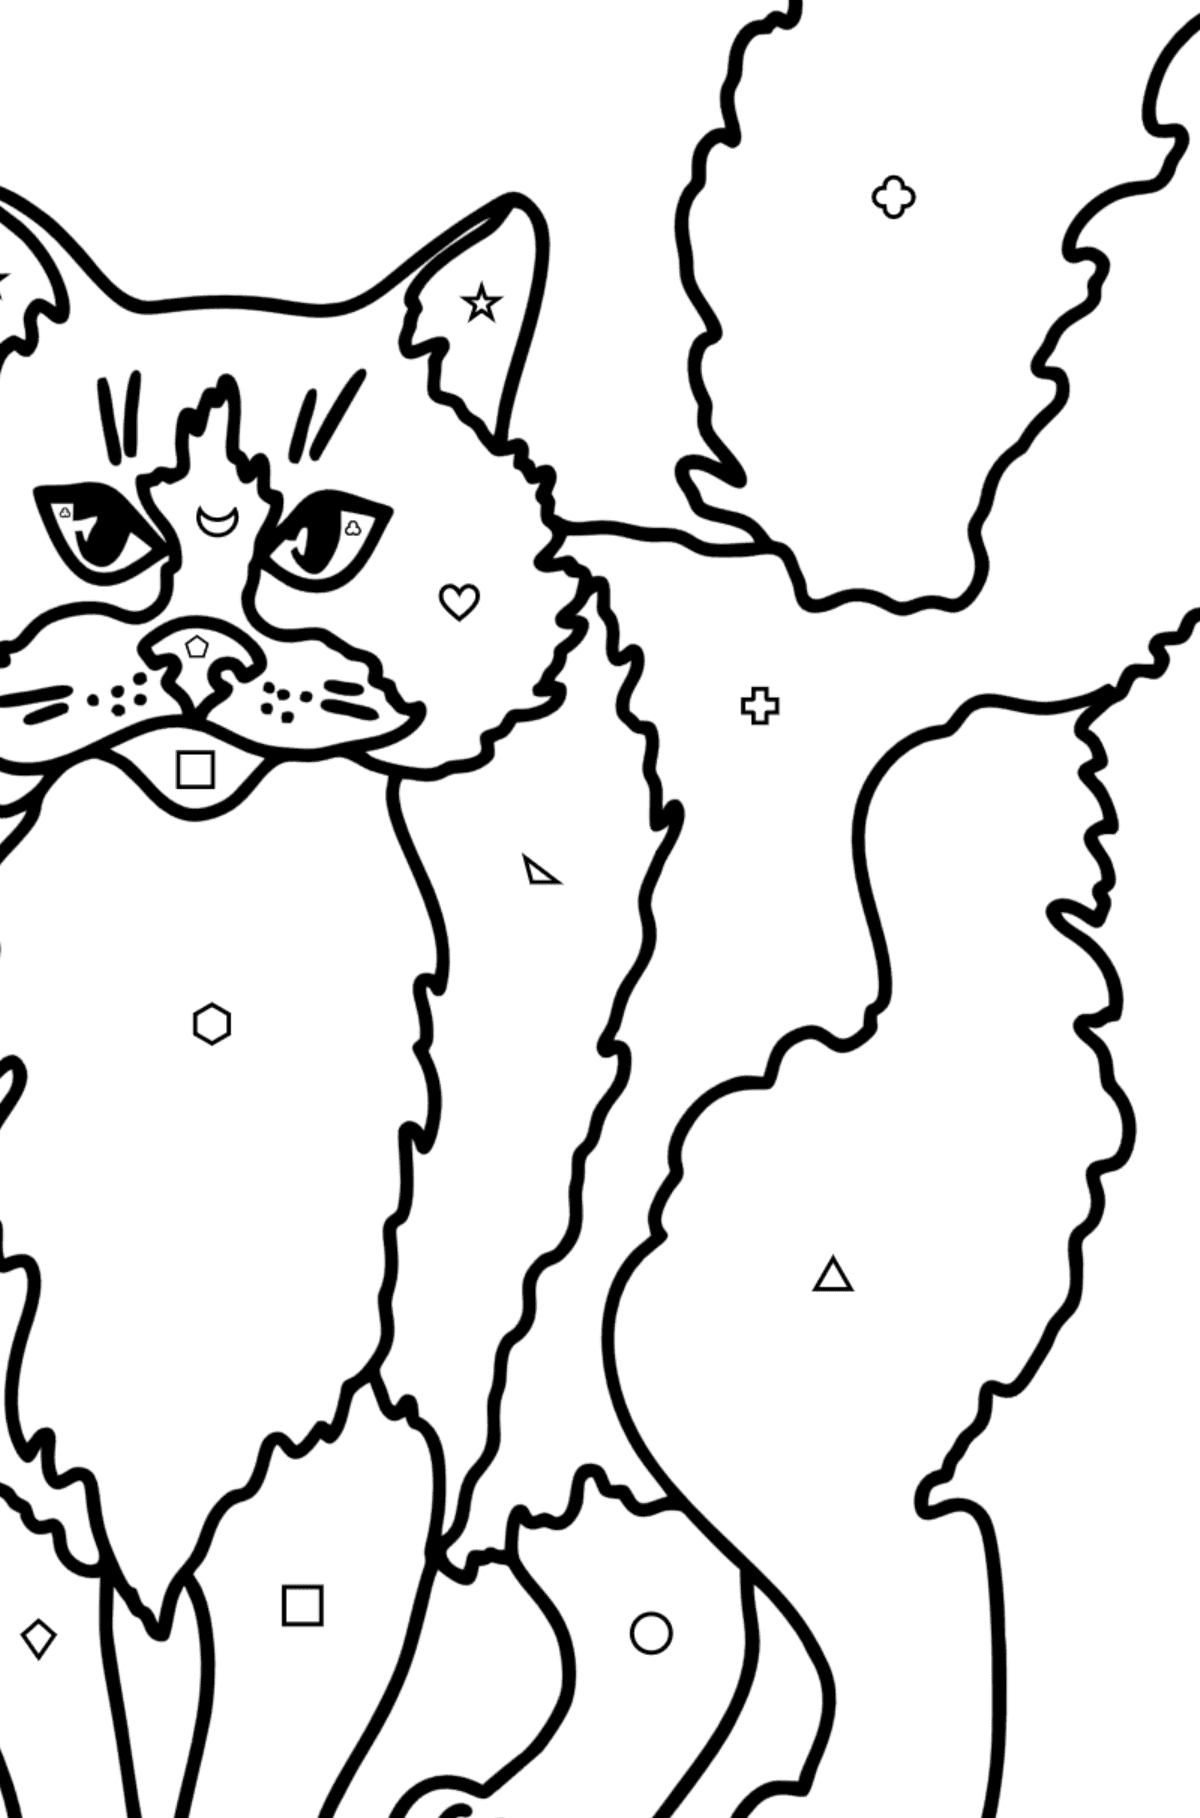 Desenho para colorir do Gato Ragdoll - Colorir por Formas Geométricas para Crianças